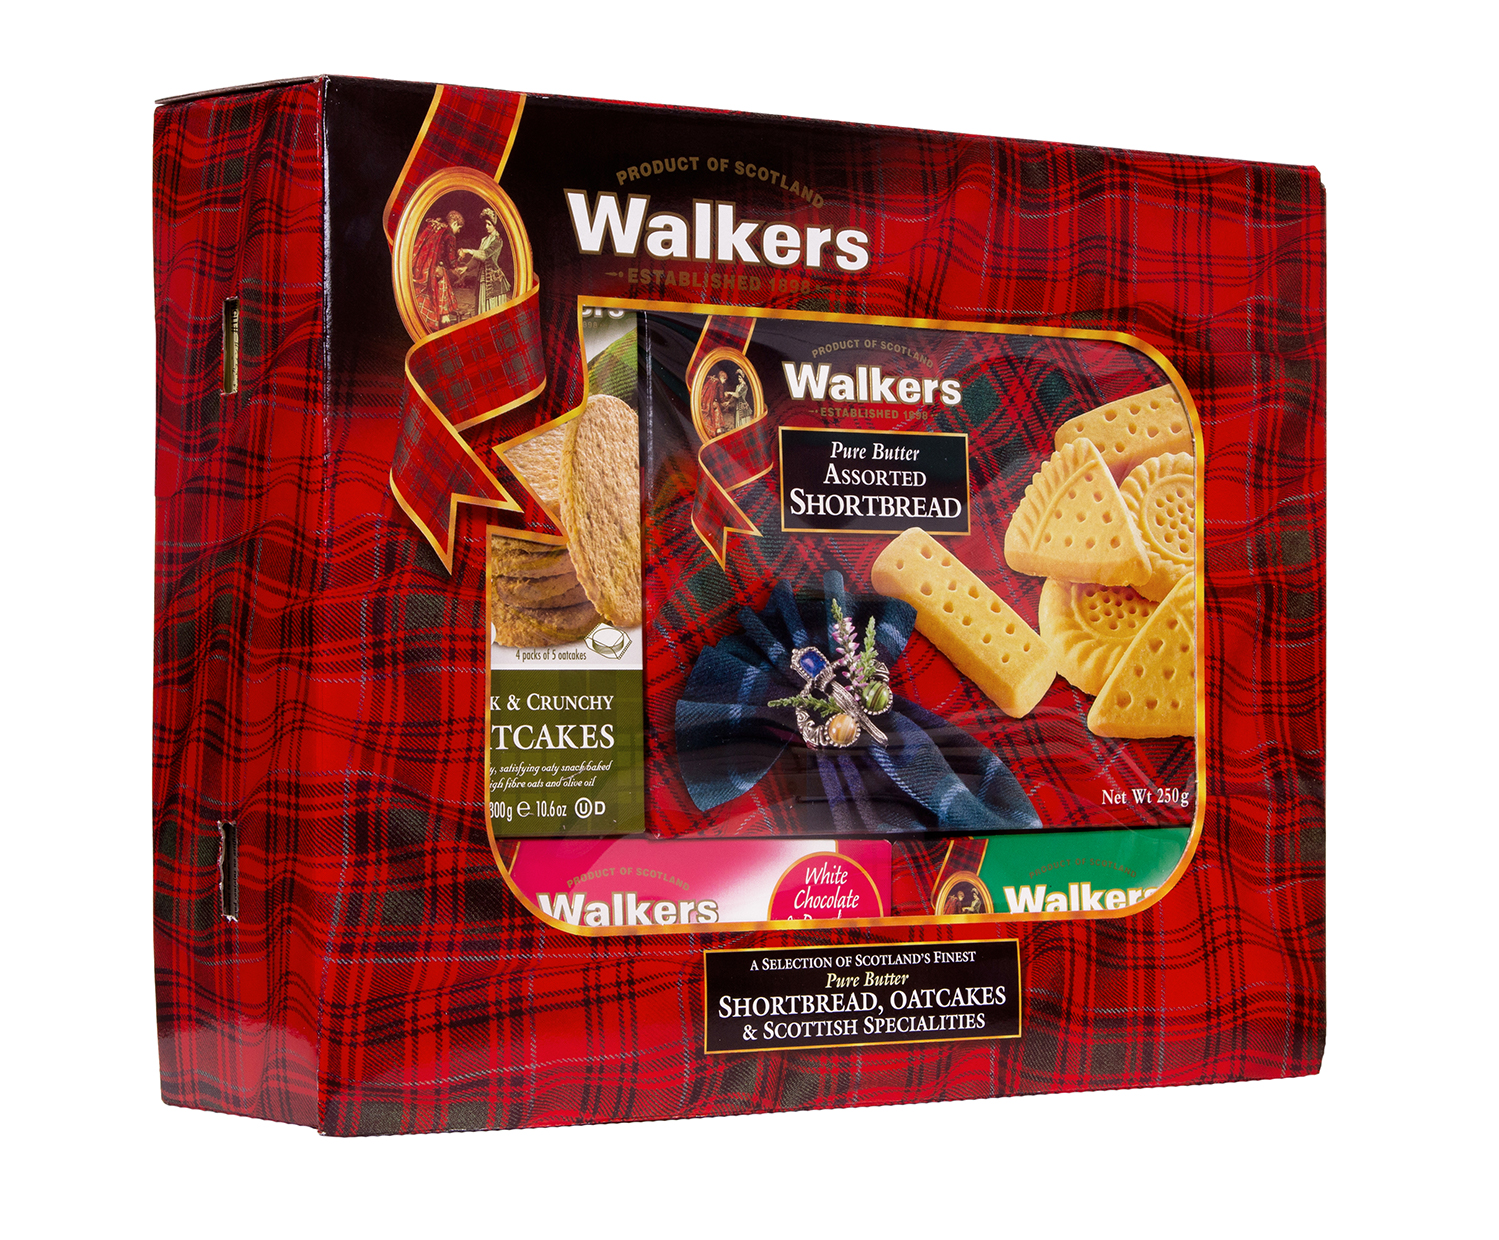 Walkers Strathspey Gift Box